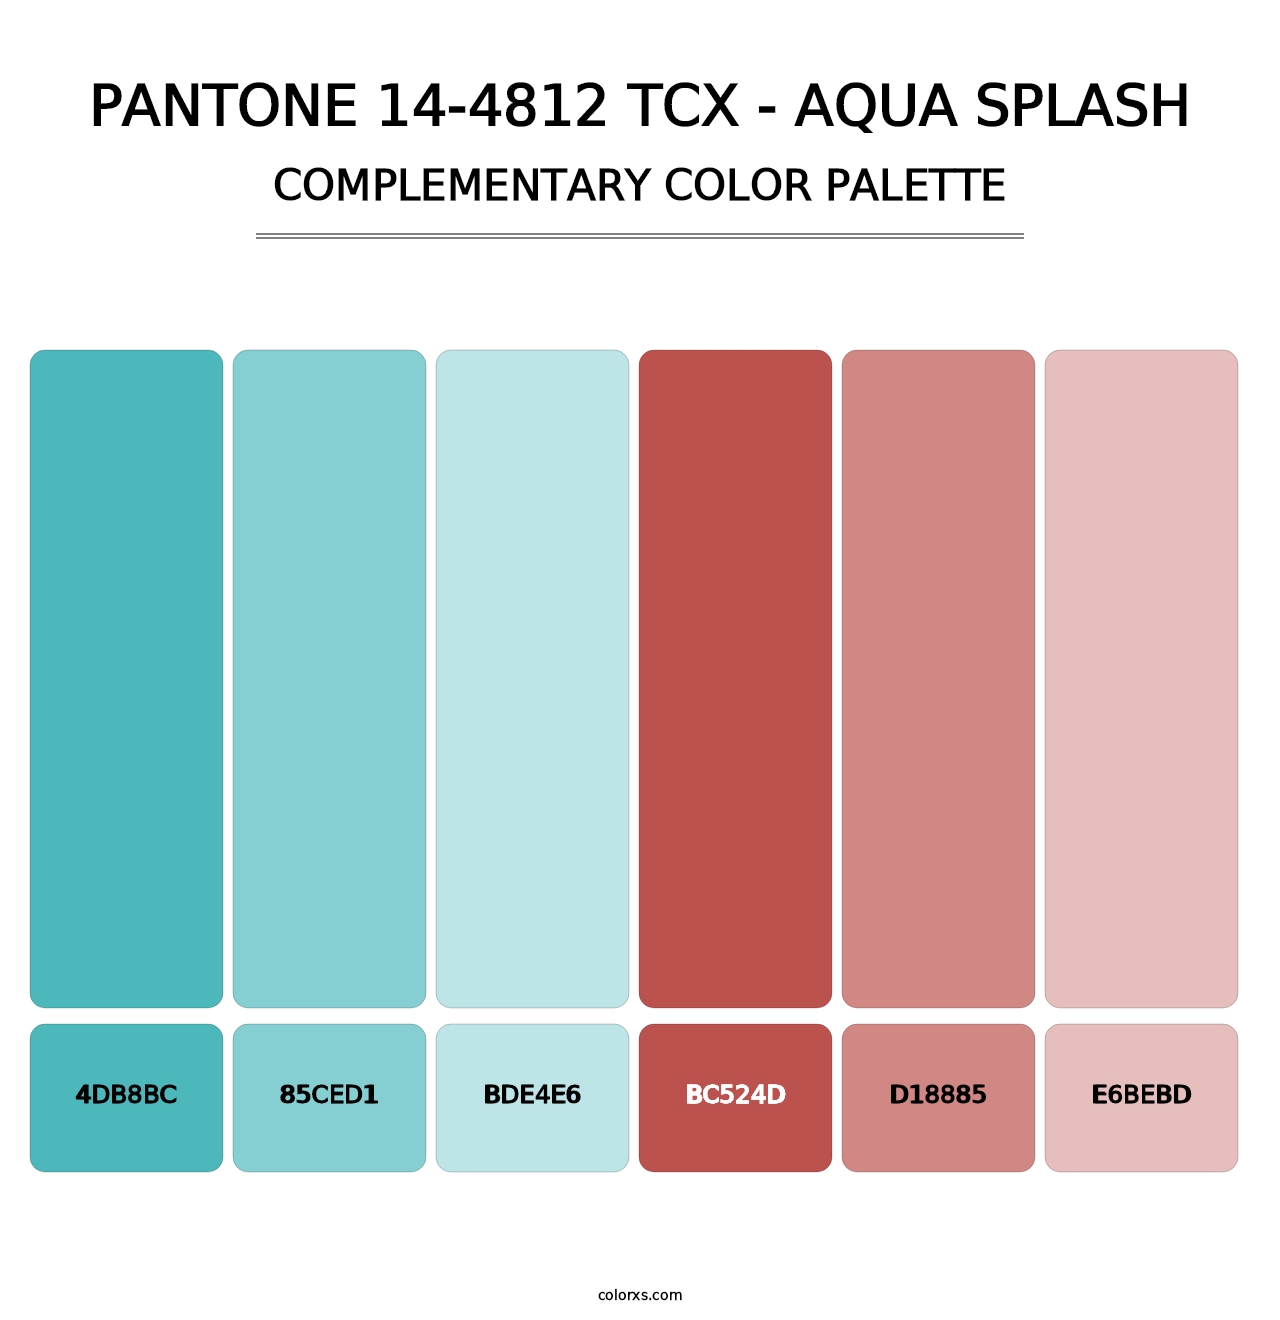 PANTONE 14-4812 TCX - Aqua Splash - Complementary Color Palette